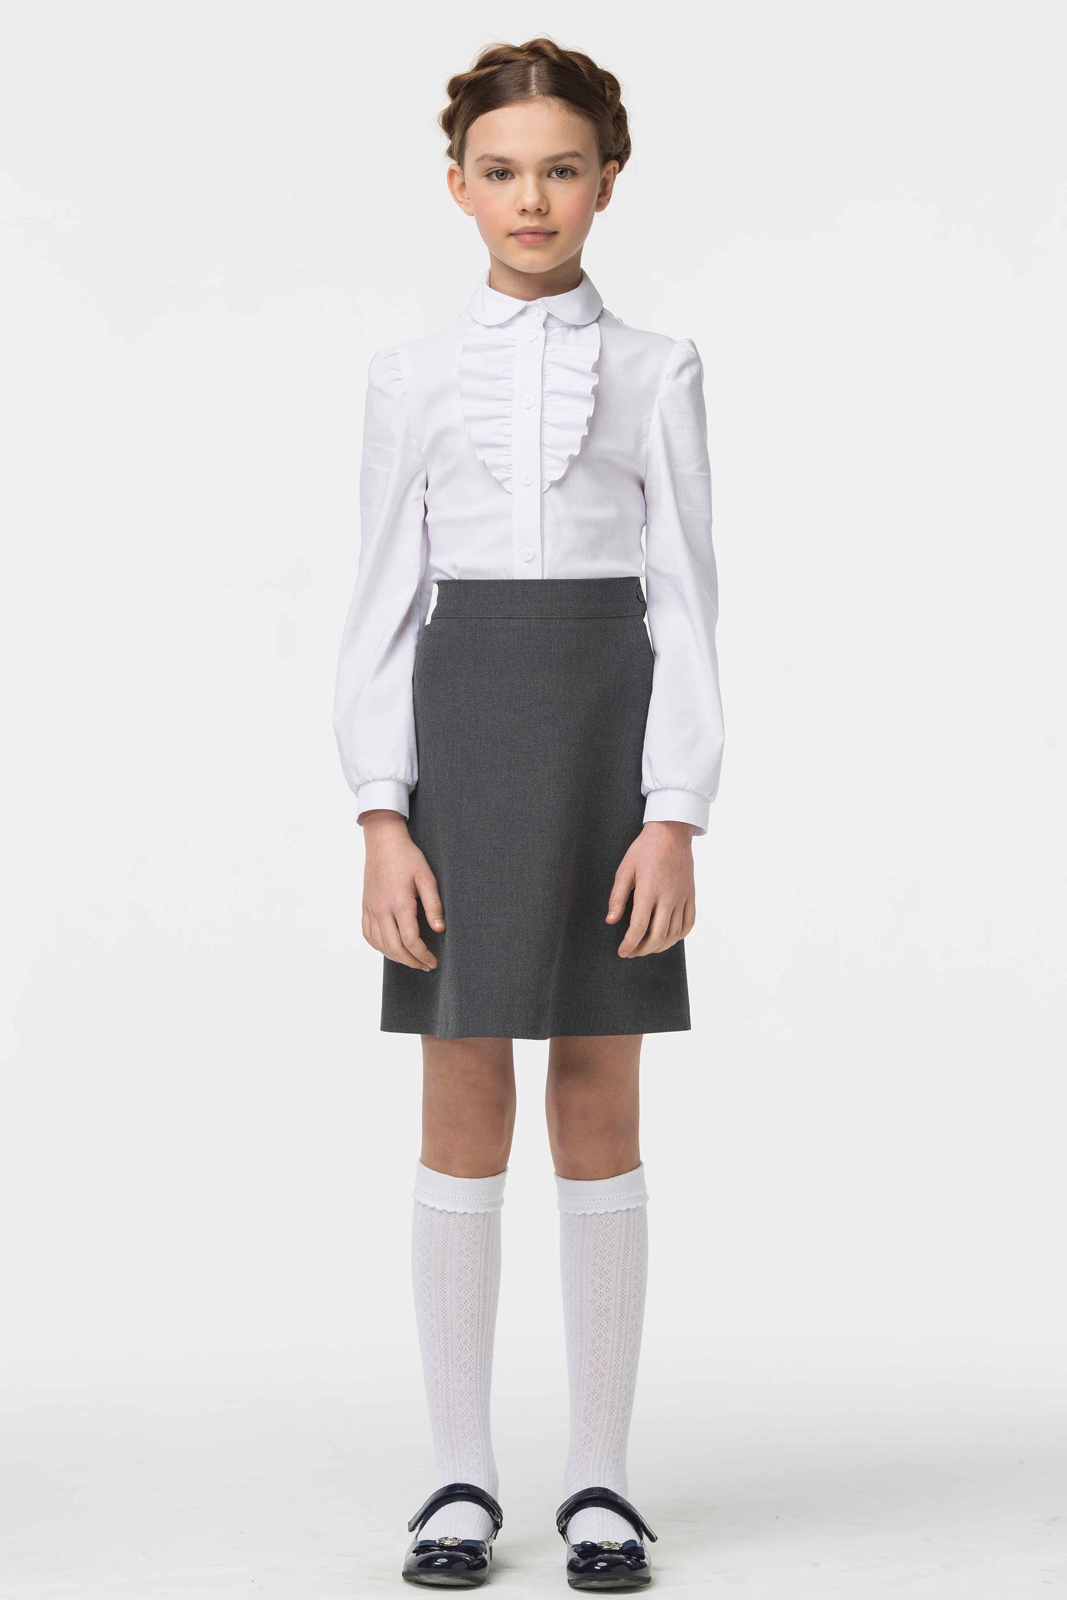 Блузка для девочки Смена, цвет: белый. 16с507. Размер 140